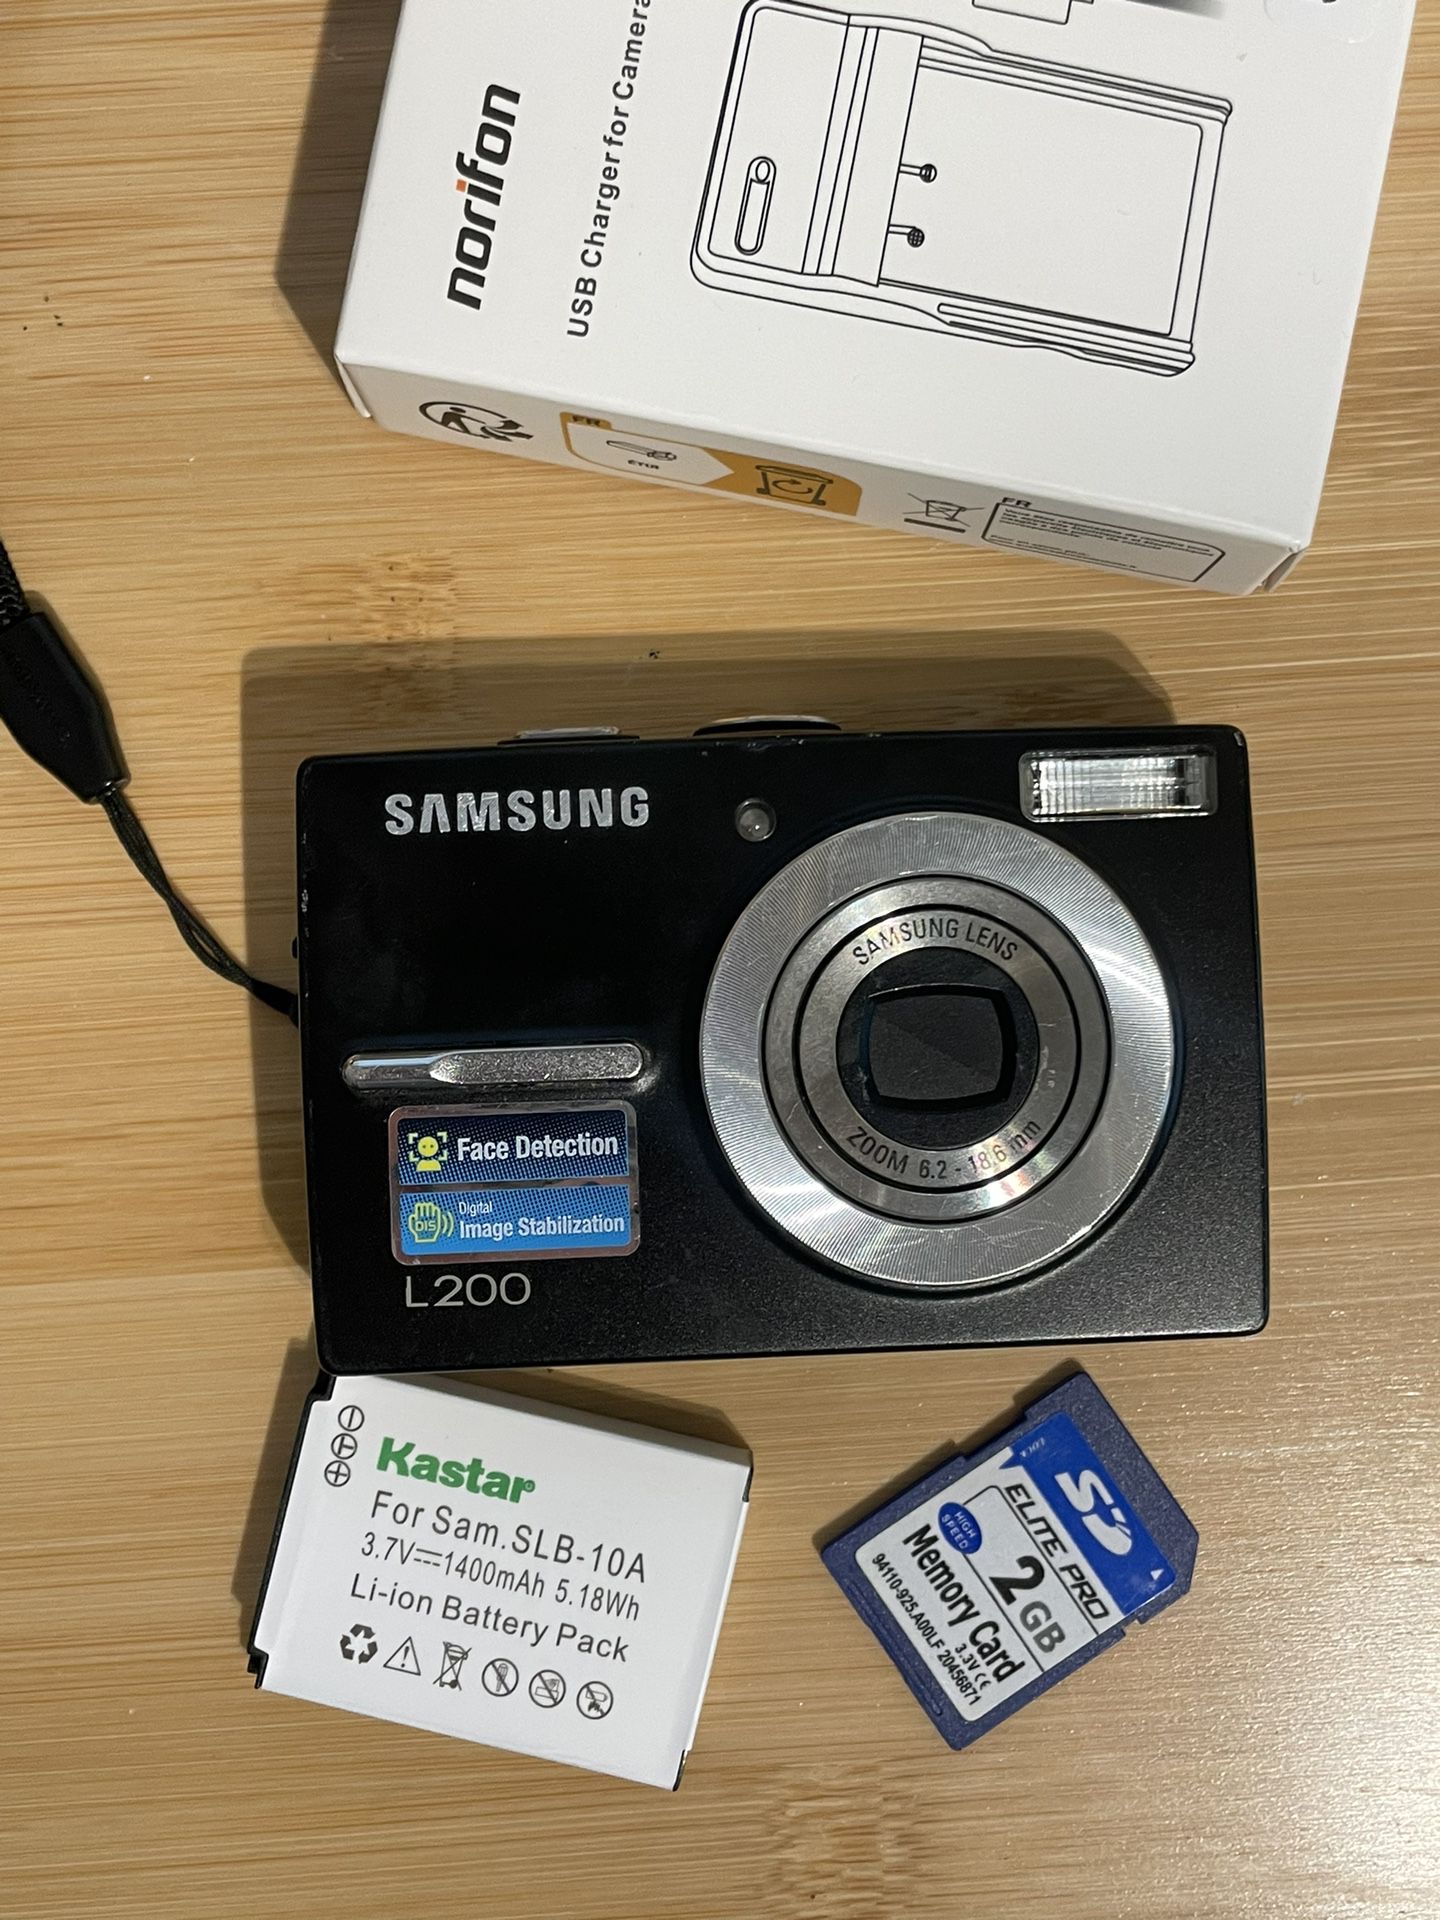 Samsung L200 Black Digital Camera Tested Works